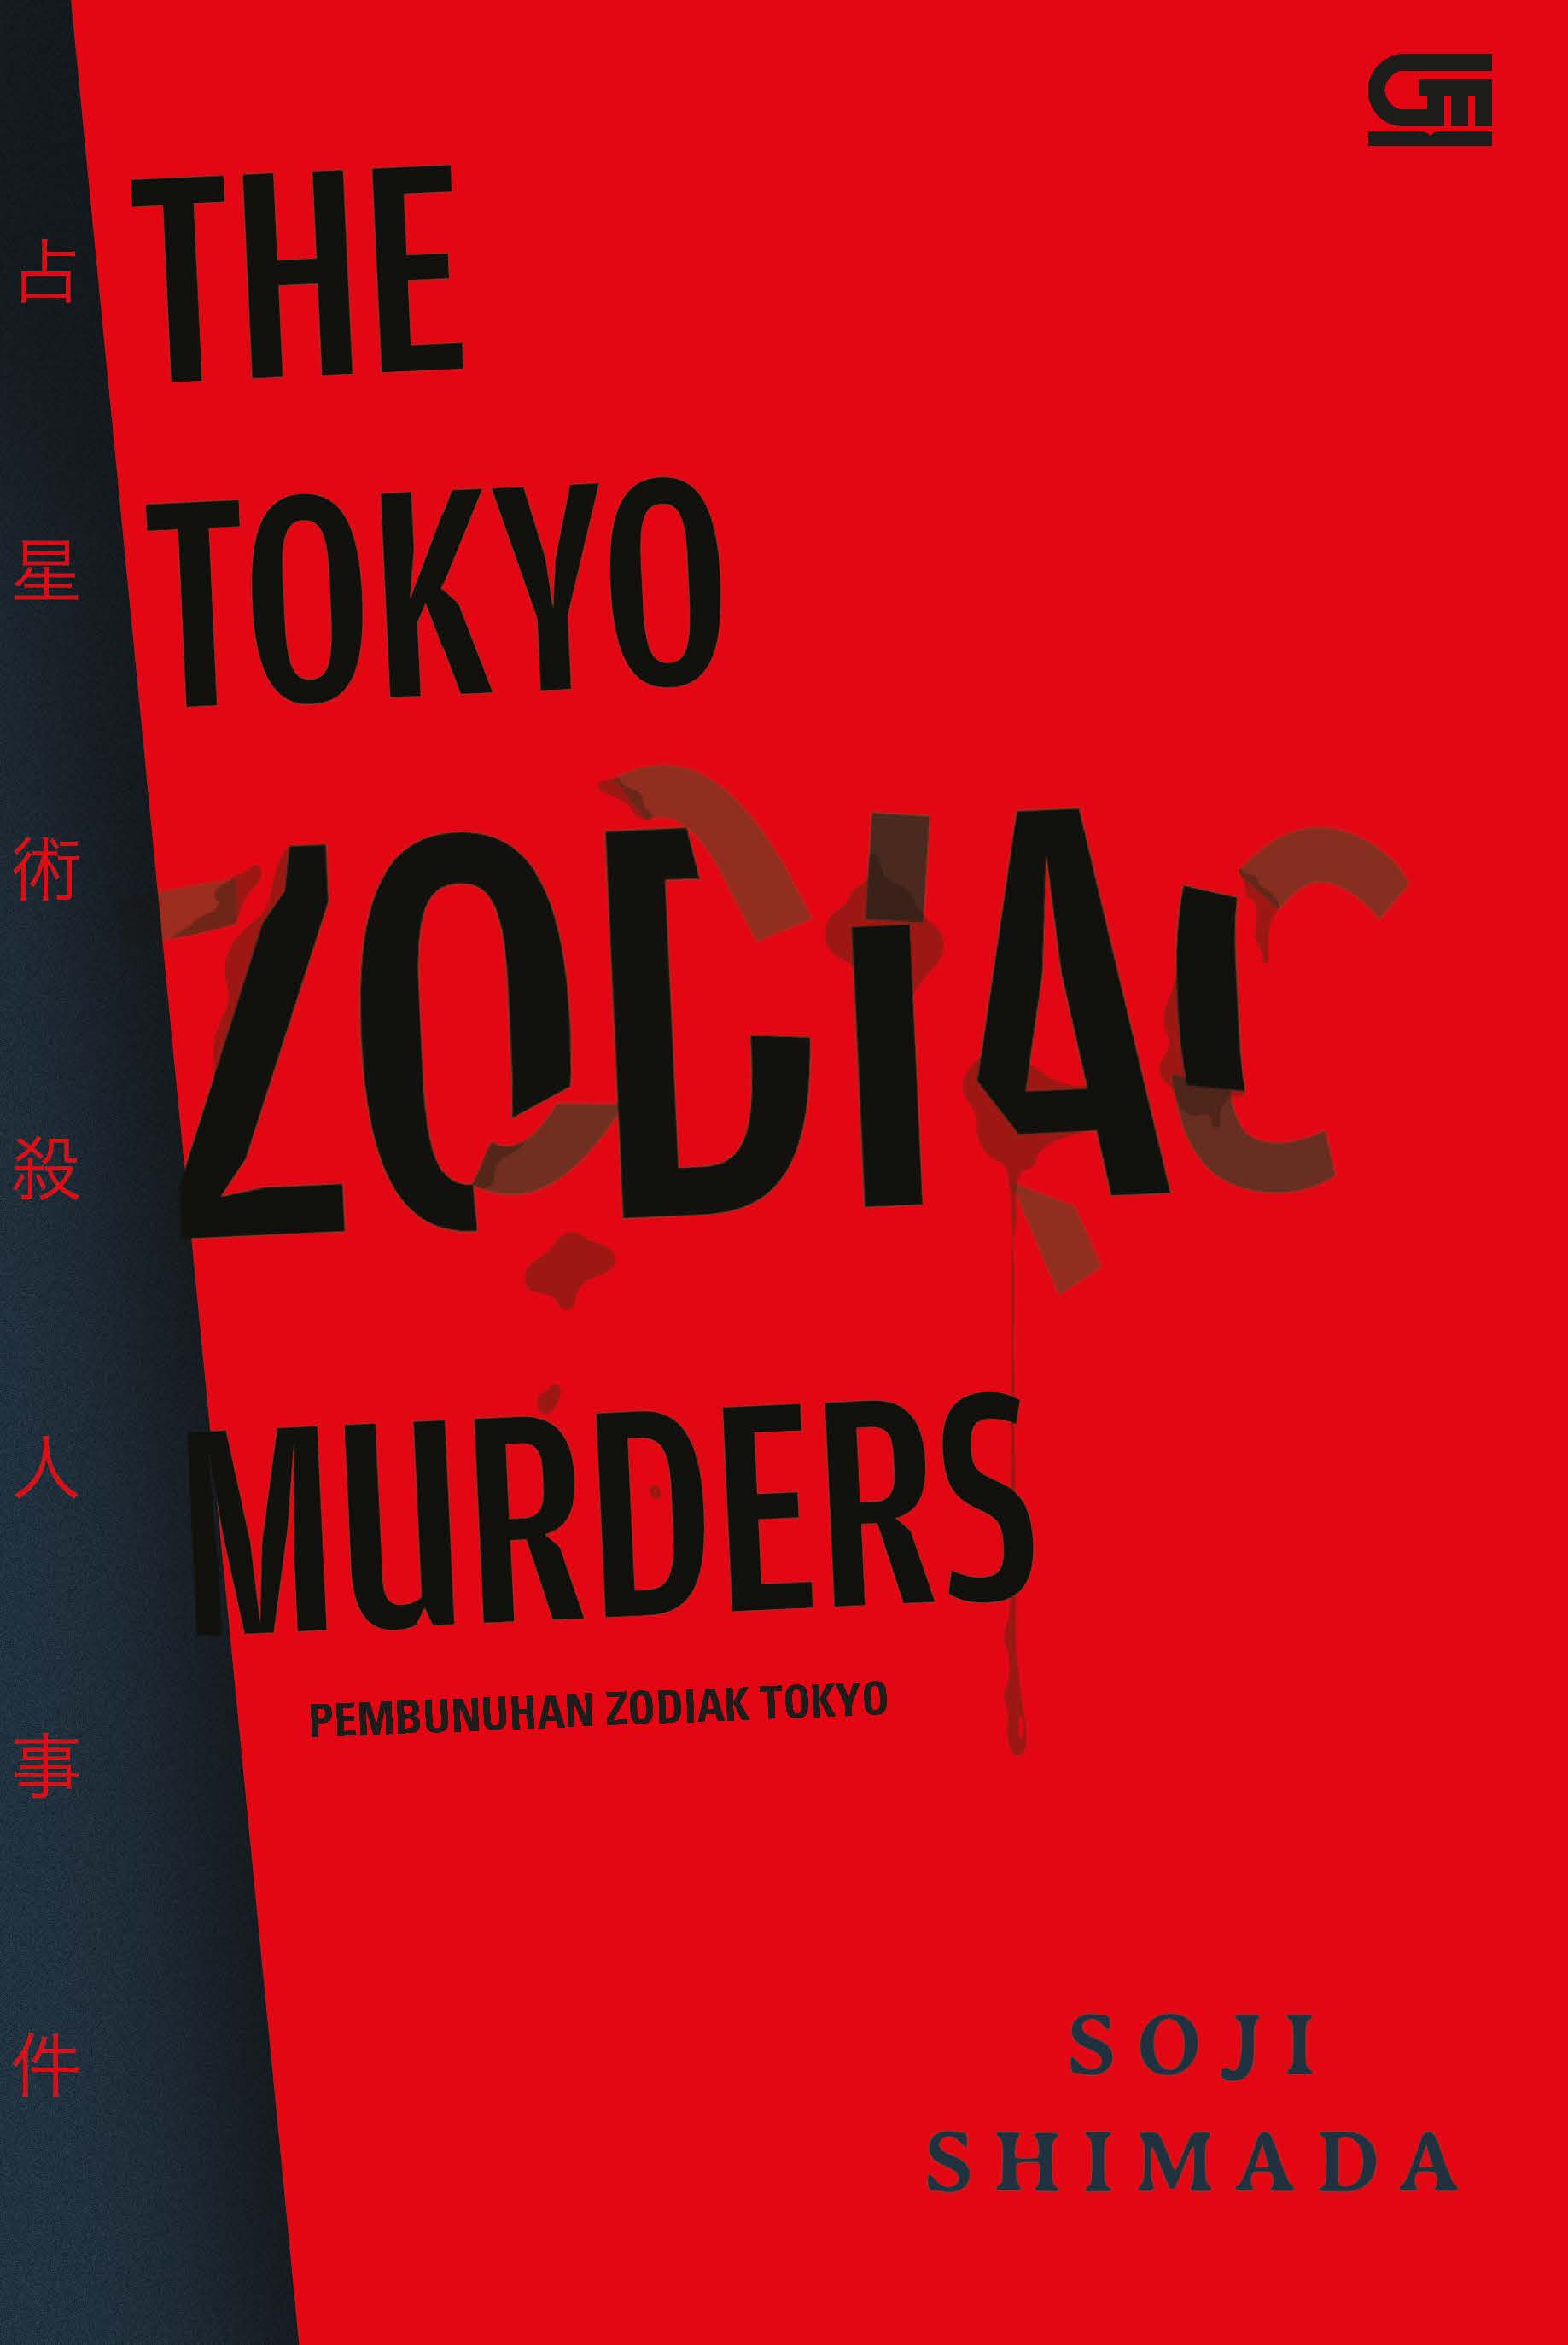 Pembunuhan Zodiak Tokyo (The Tokyo Zodiac Murders)